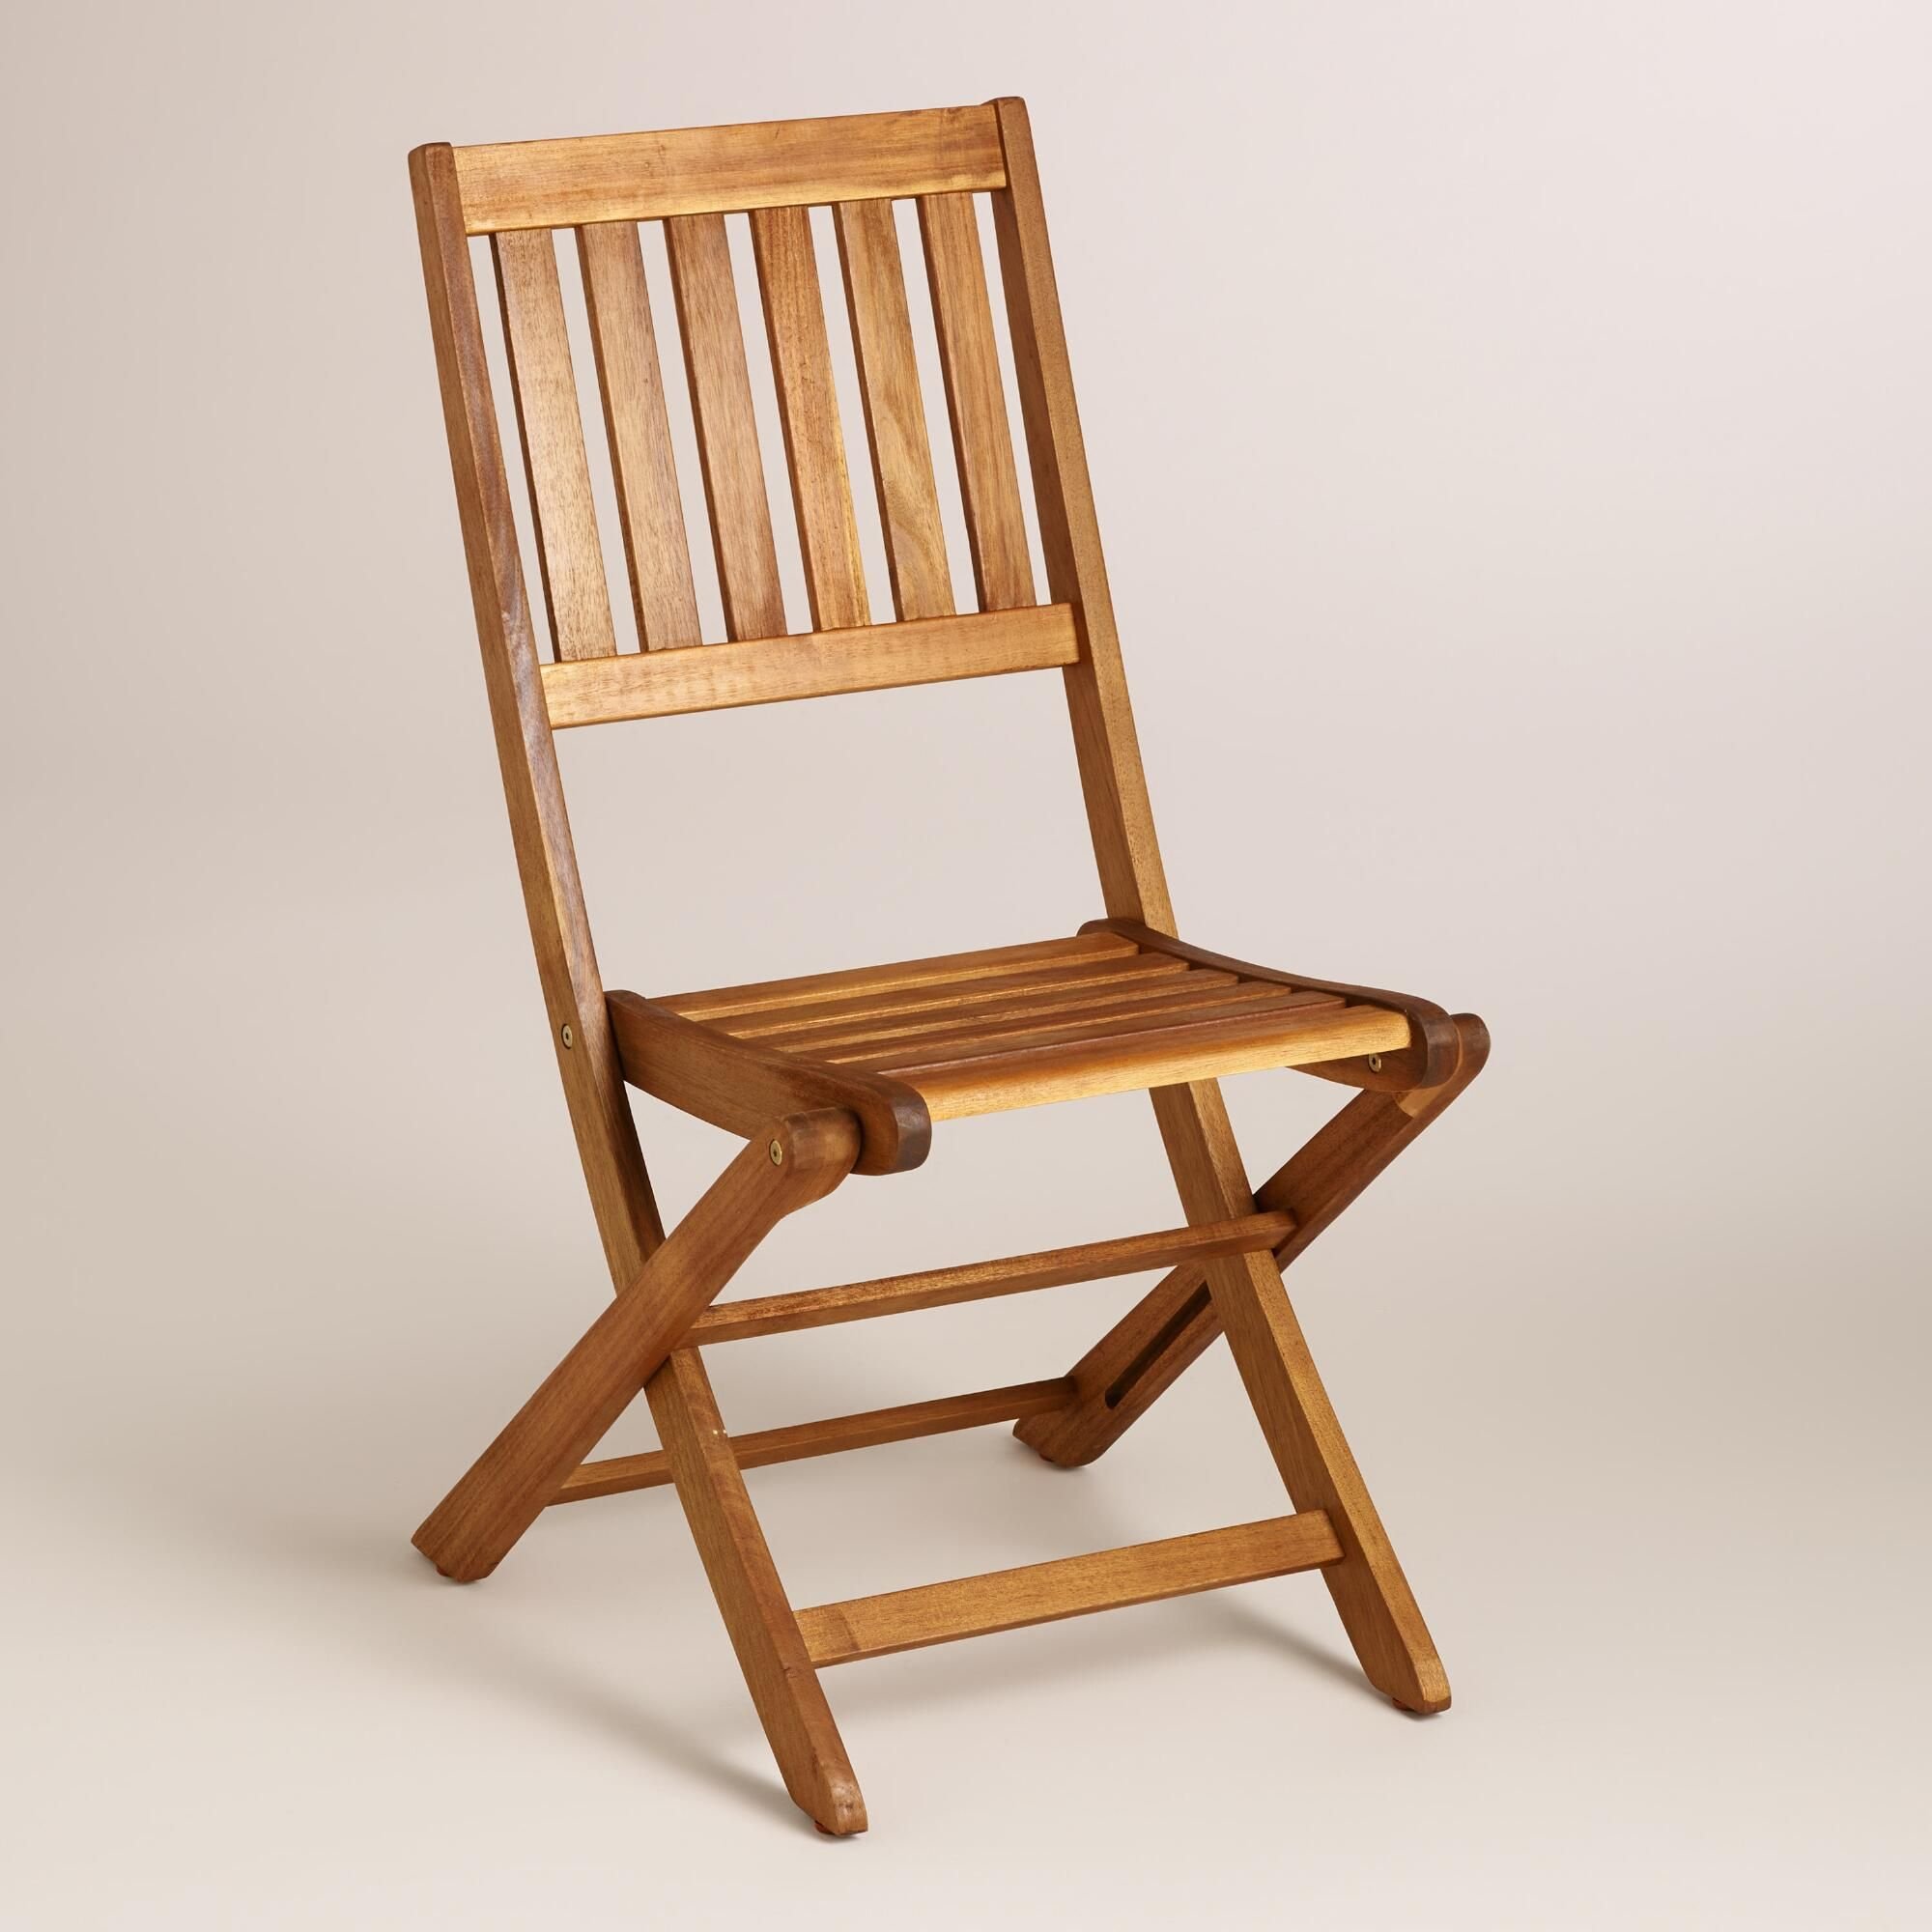 Wooden chair. Стул деревянный. Складные деревянные стулья. Стул раскладной деревянный. Раскладной стул из дерева.